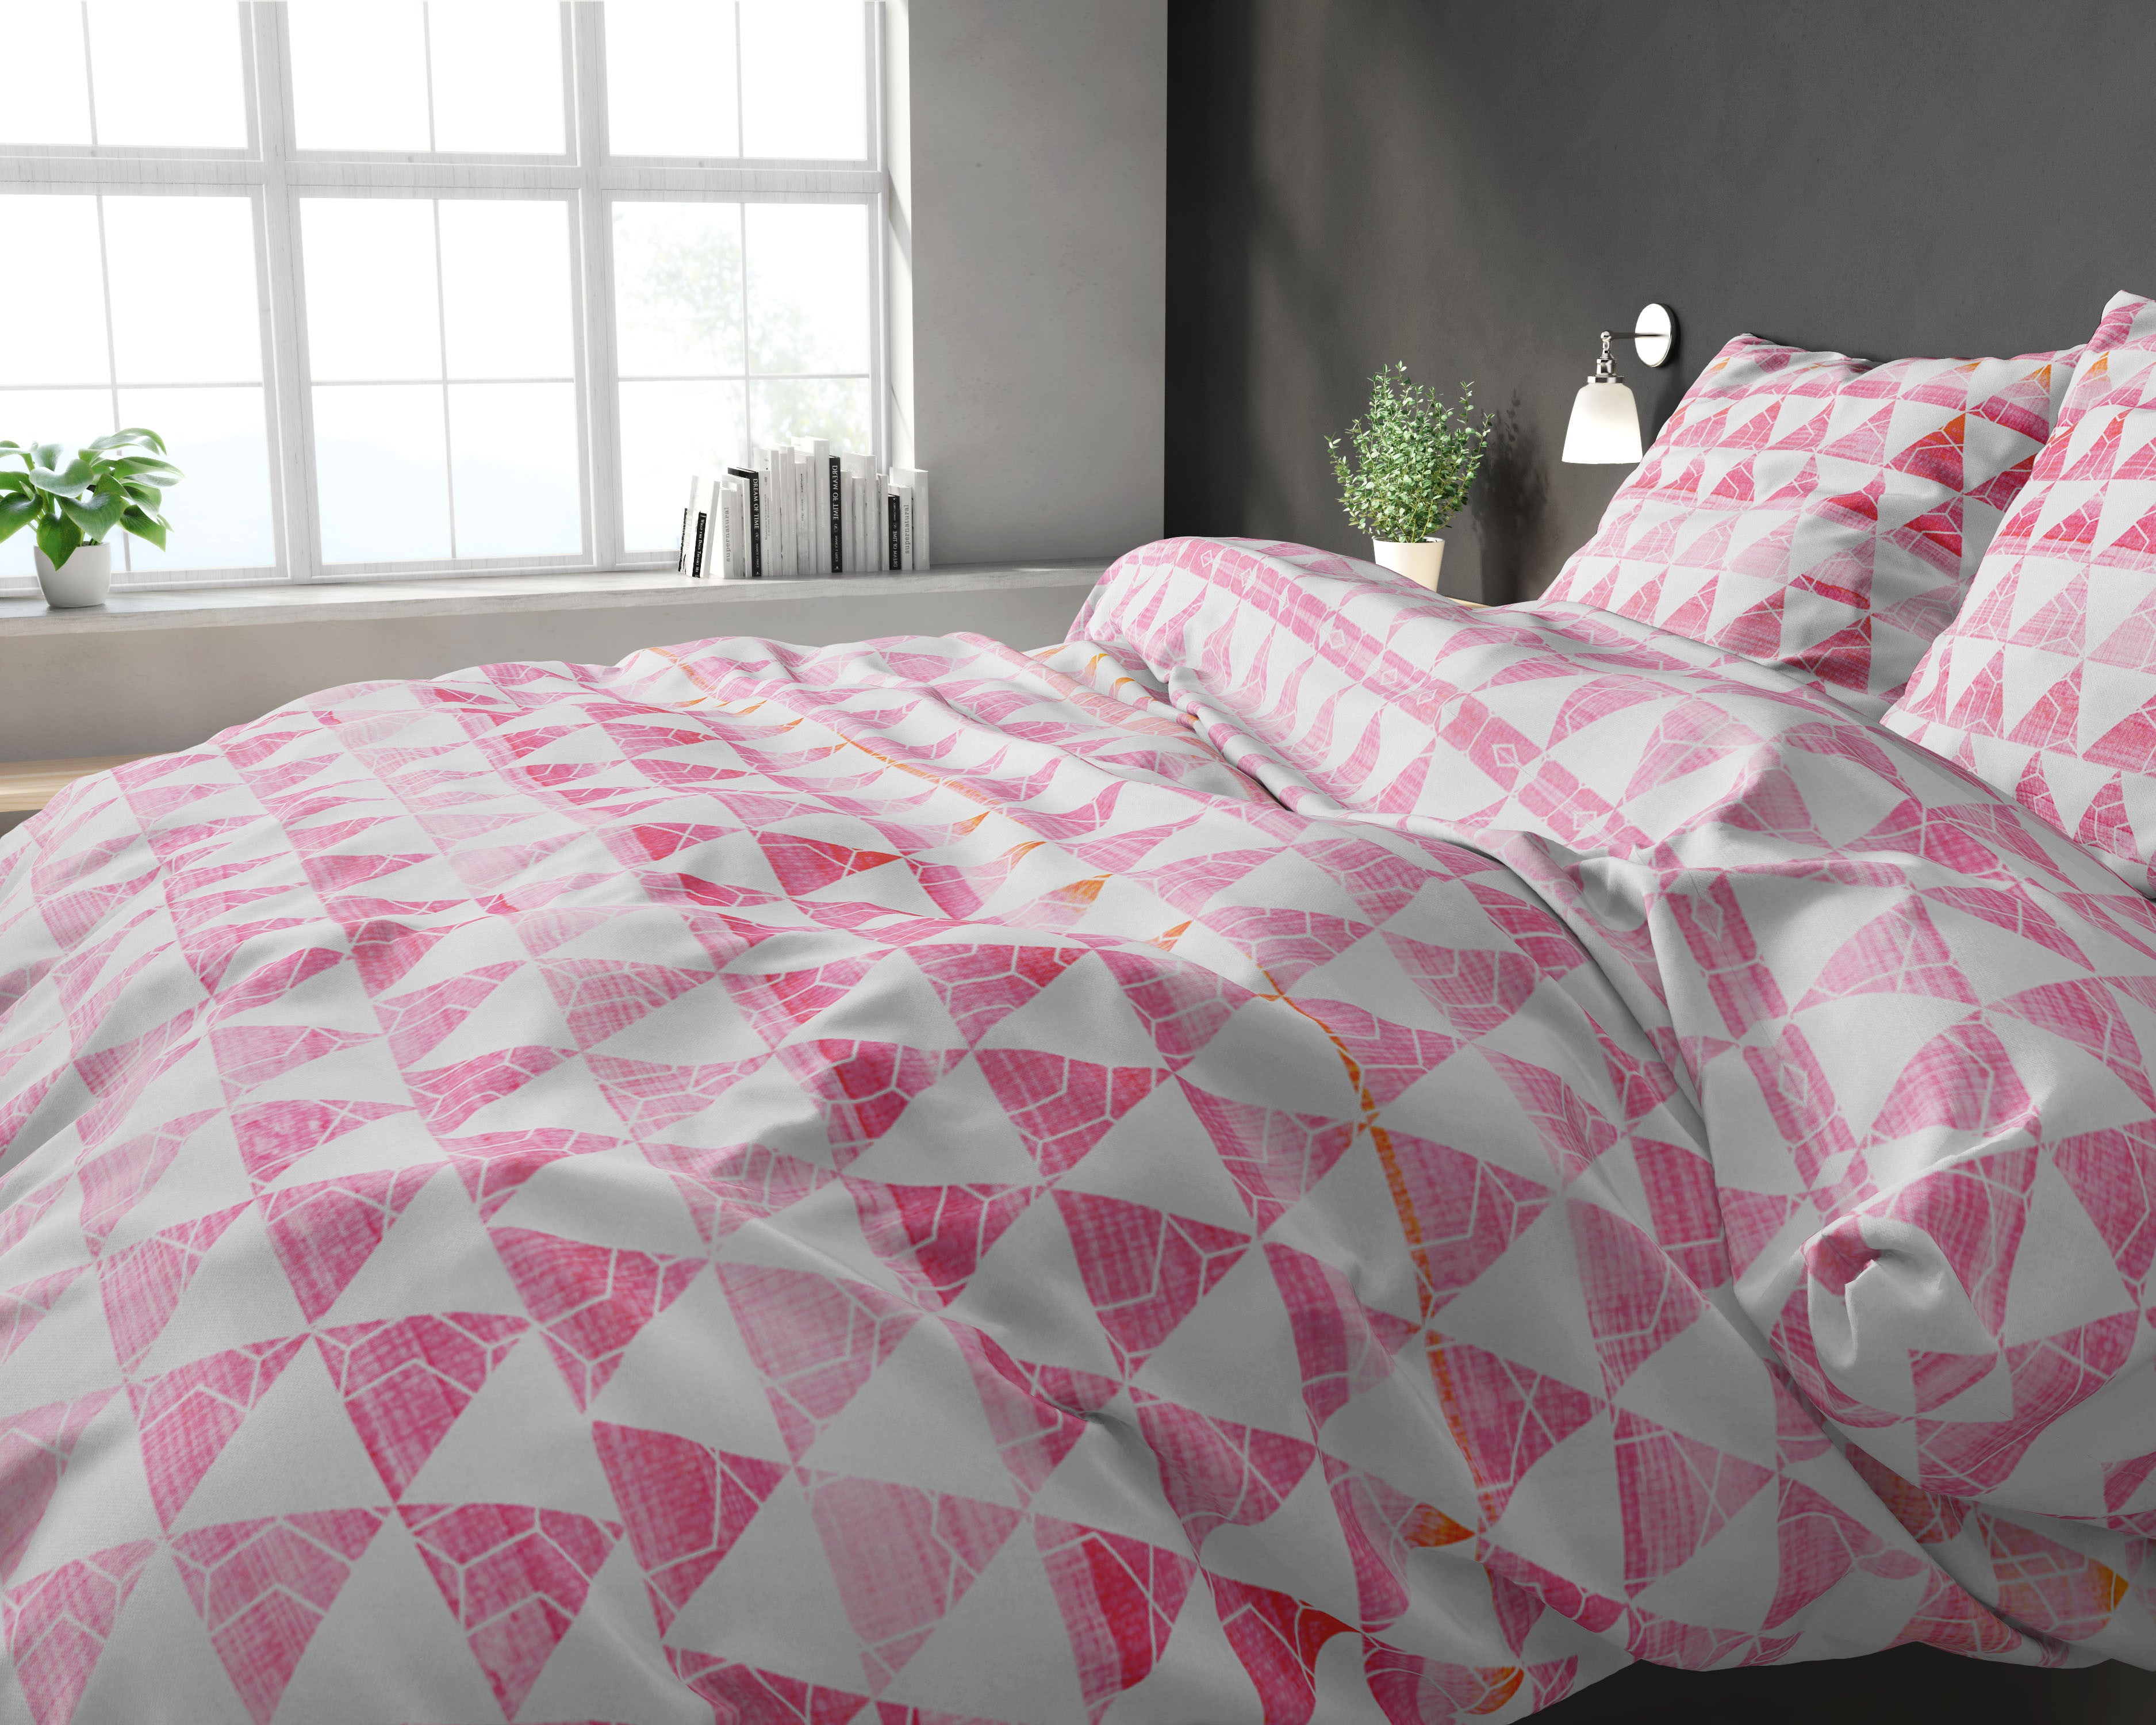 Jade sengesæt,pink 240 x 220 cm